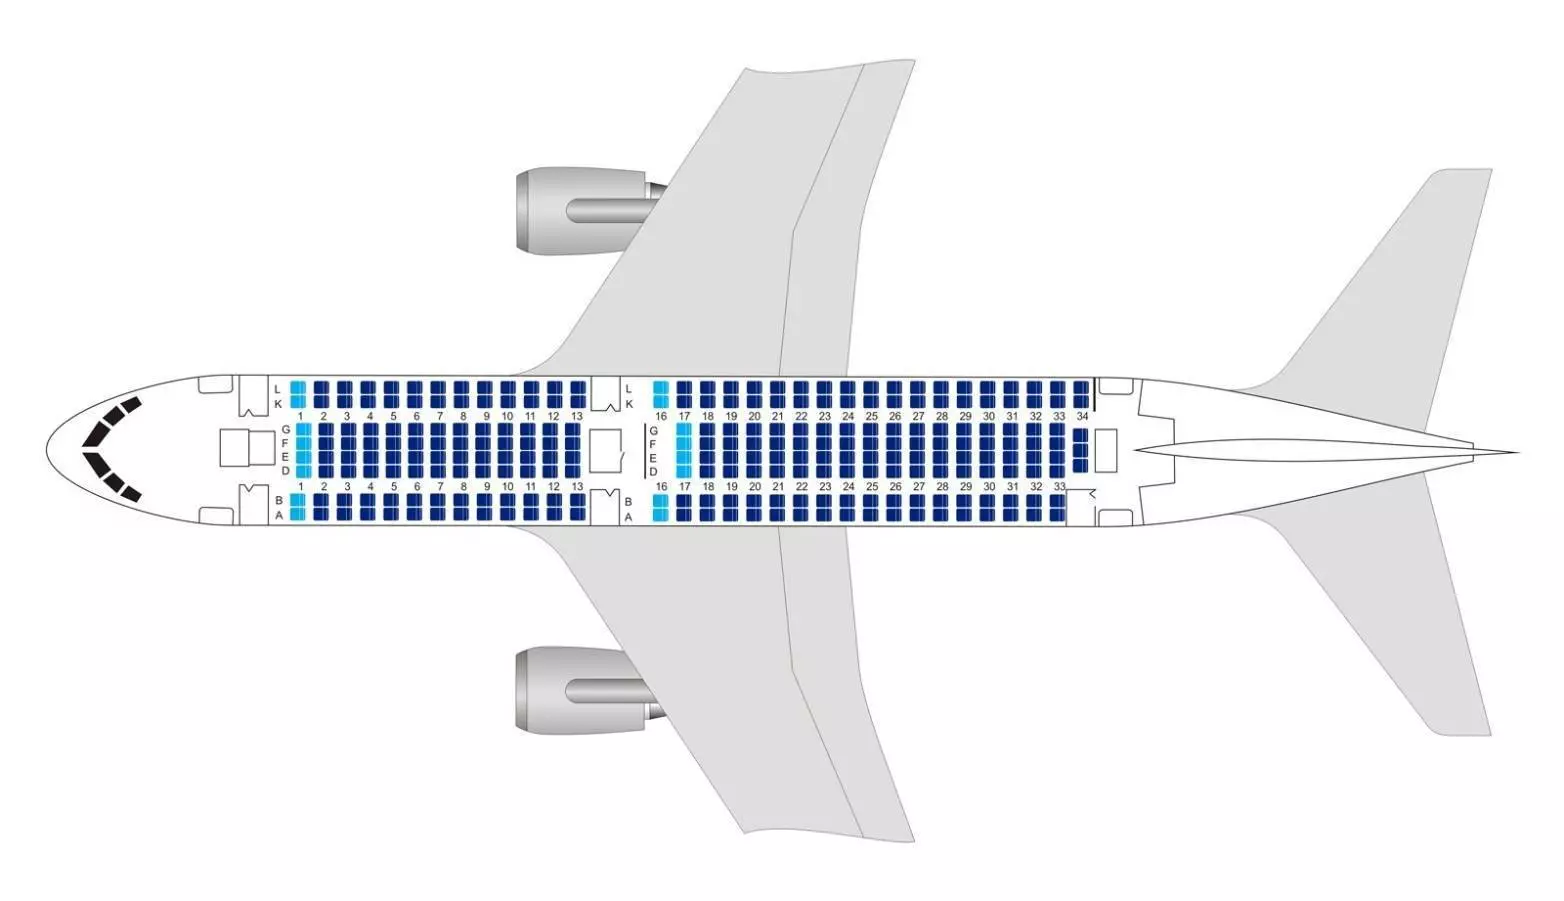 Boeing 737-800 utair: лучшие места и схема салона – zeppelin blog